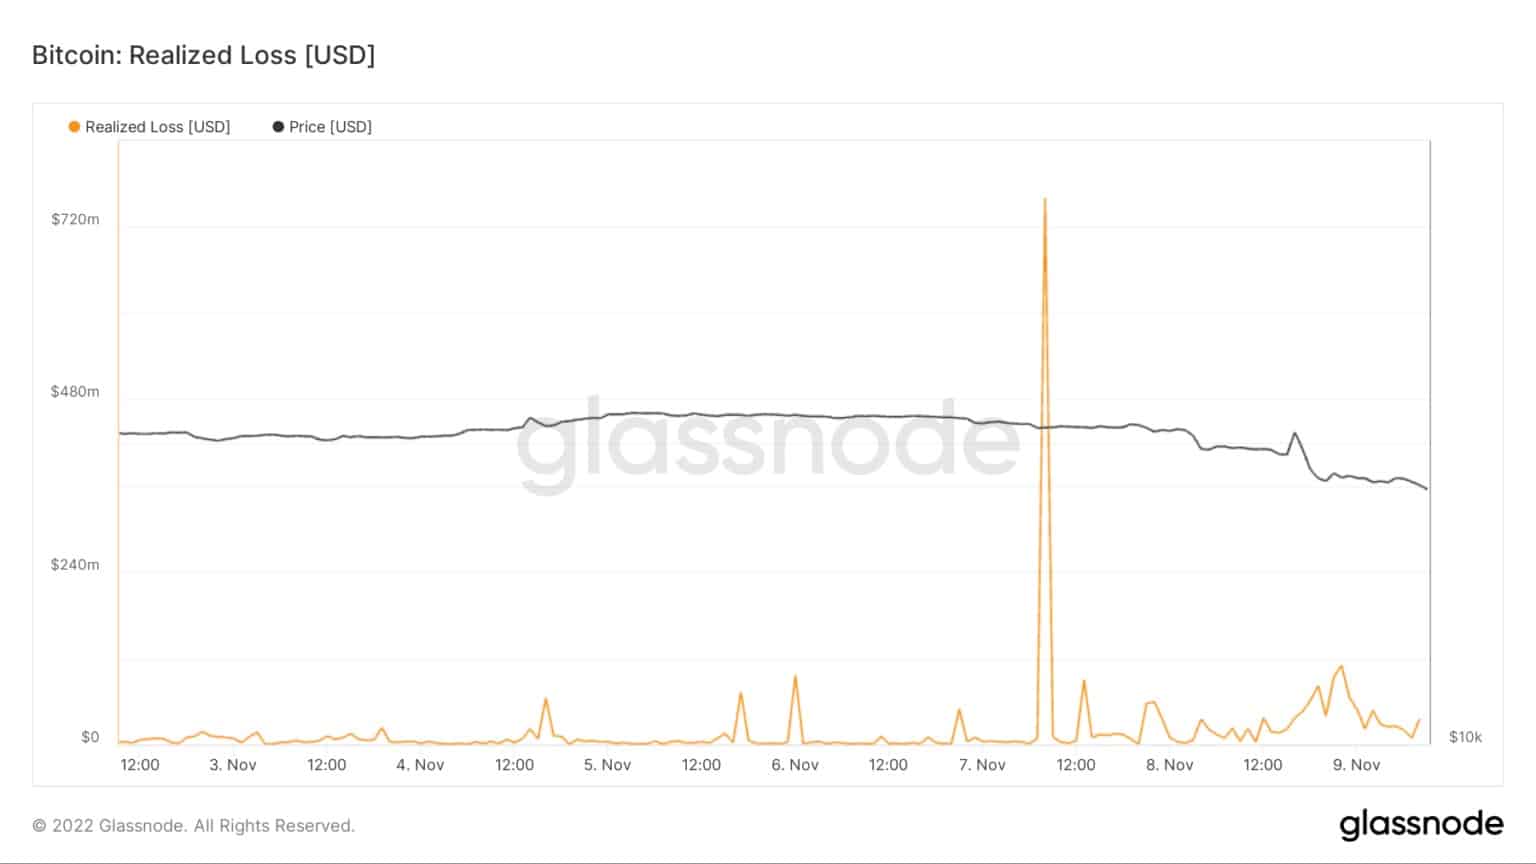 11月3日から11月9日までのビットコインの実現損失を示すグラフ（出典：Glassnode）